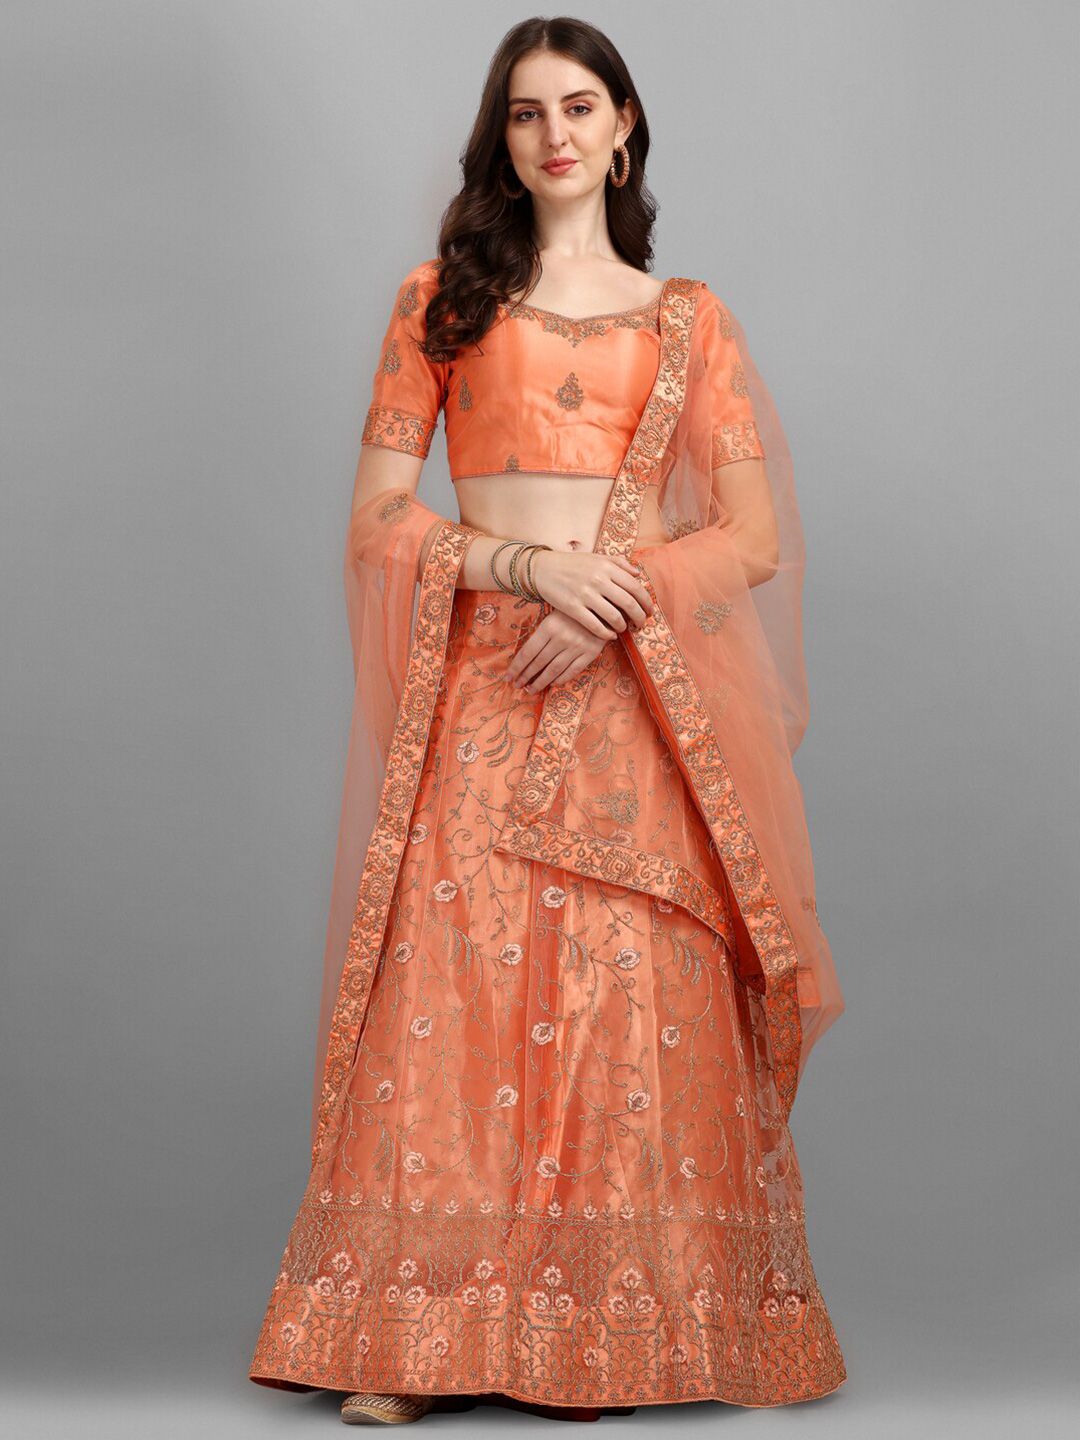 LABEL AARNA Orange & Gold-Toned Embellished Semi-Stitched Lehenga Choli Price in India